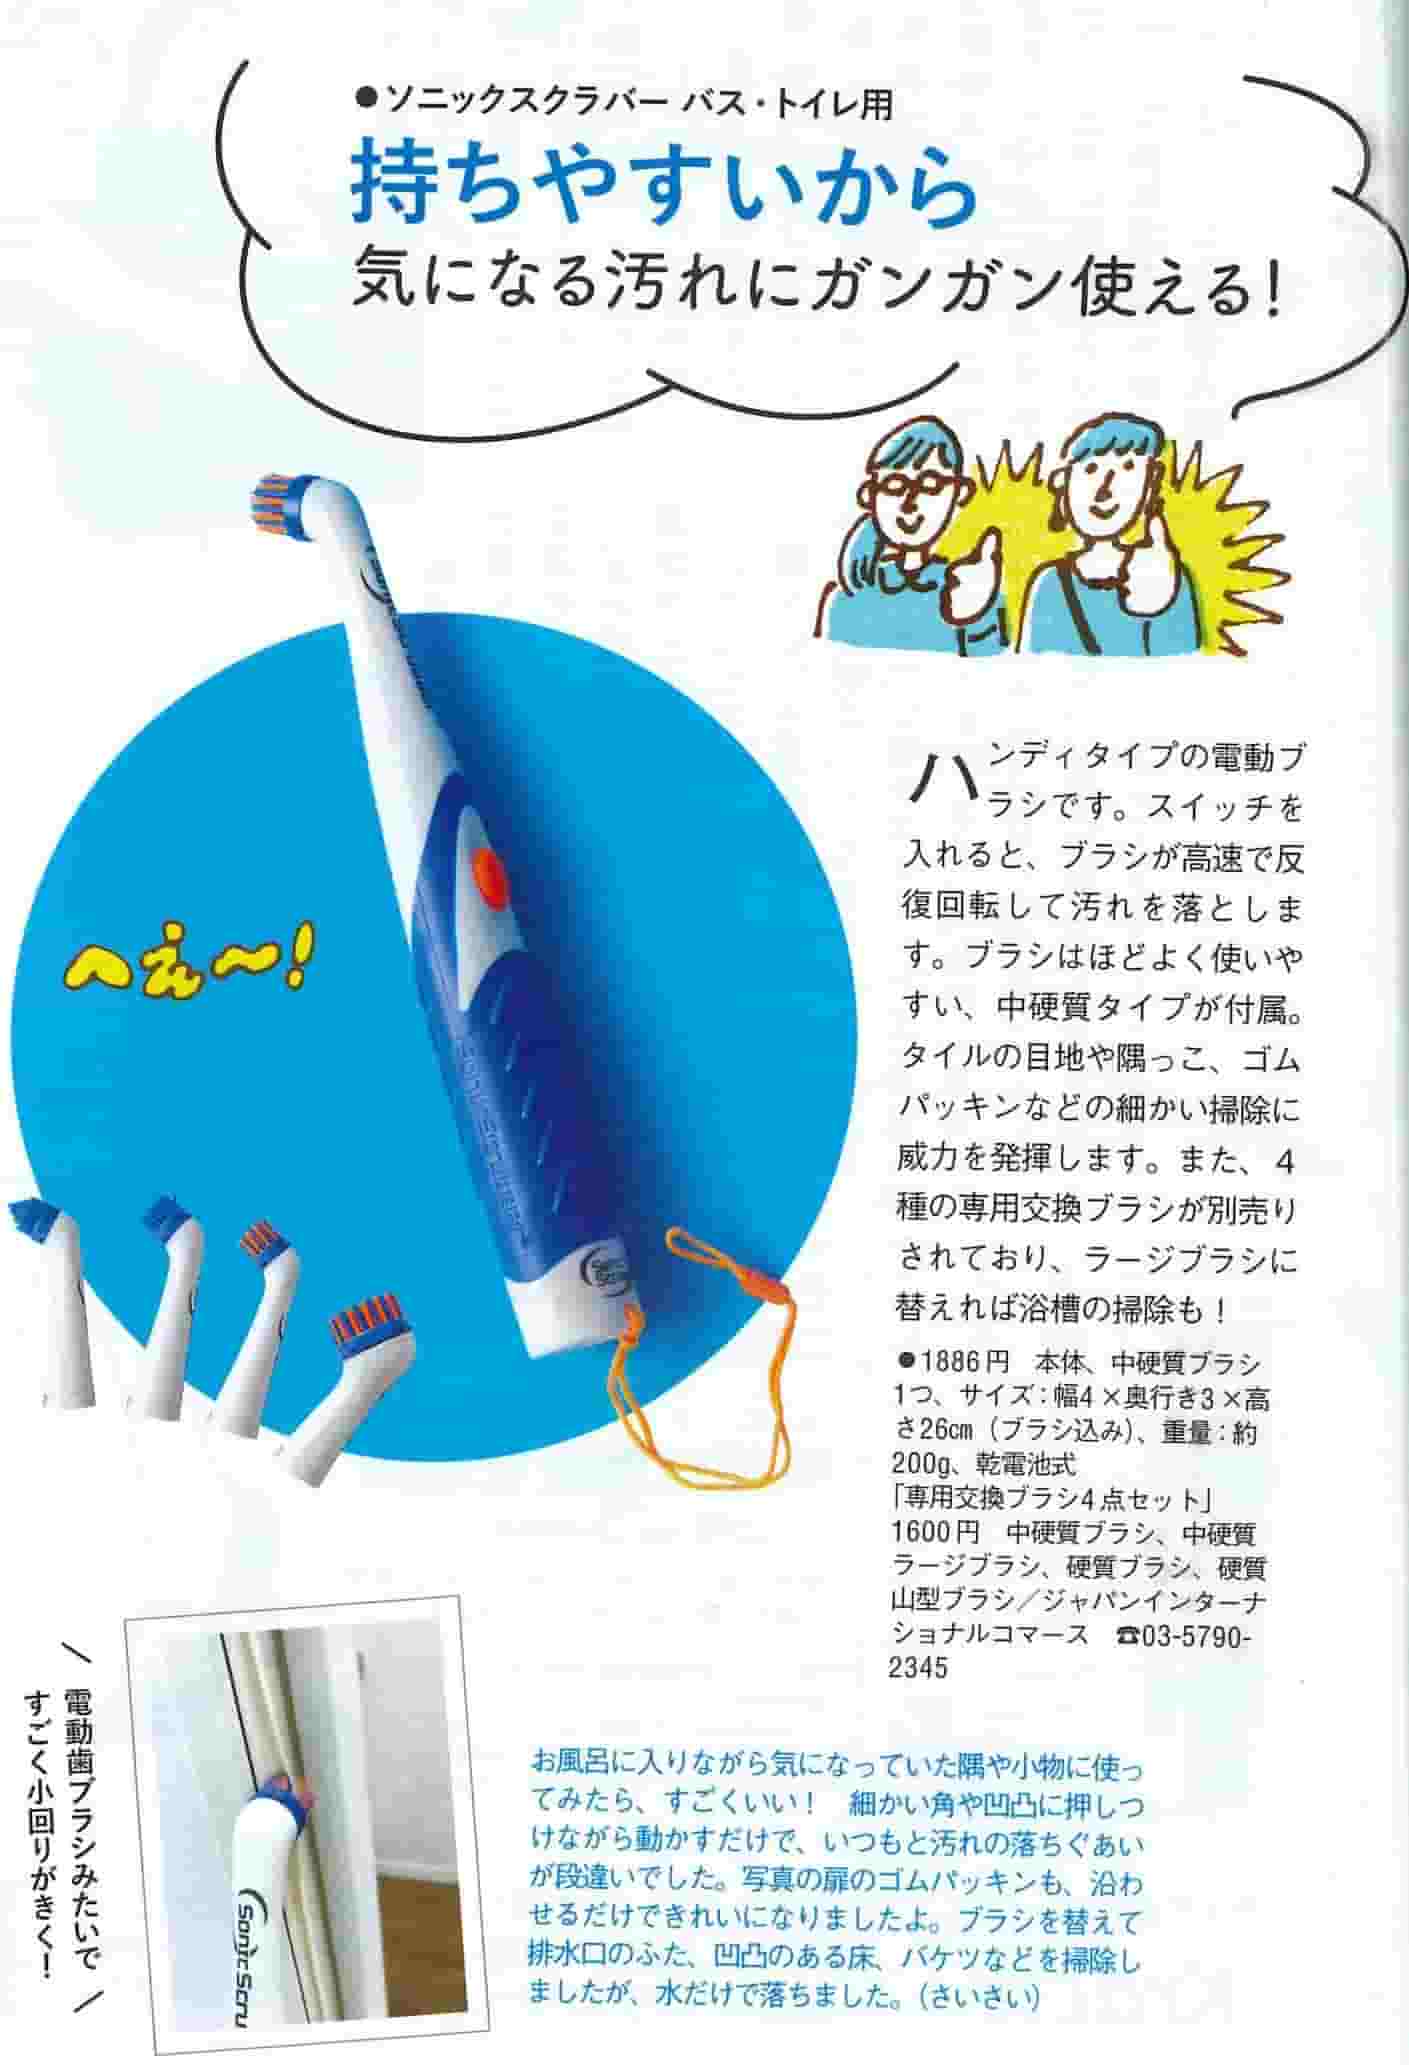 雑誌「オレンジページ」で『ソニックスクラバー バス・トイレ用』が紹介されました 株式会社 ジャパン